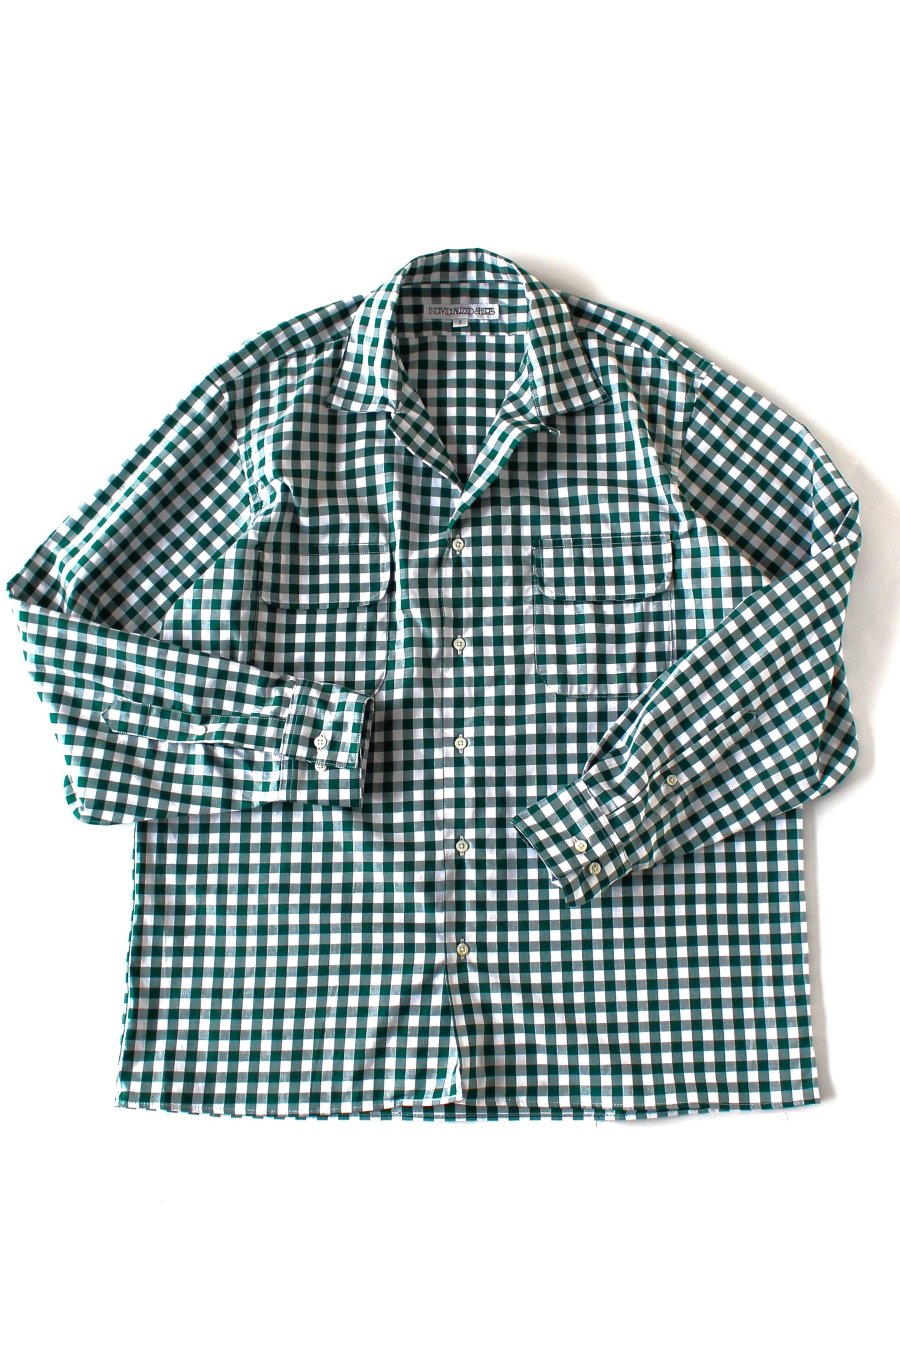 individualized shirt  サイズS